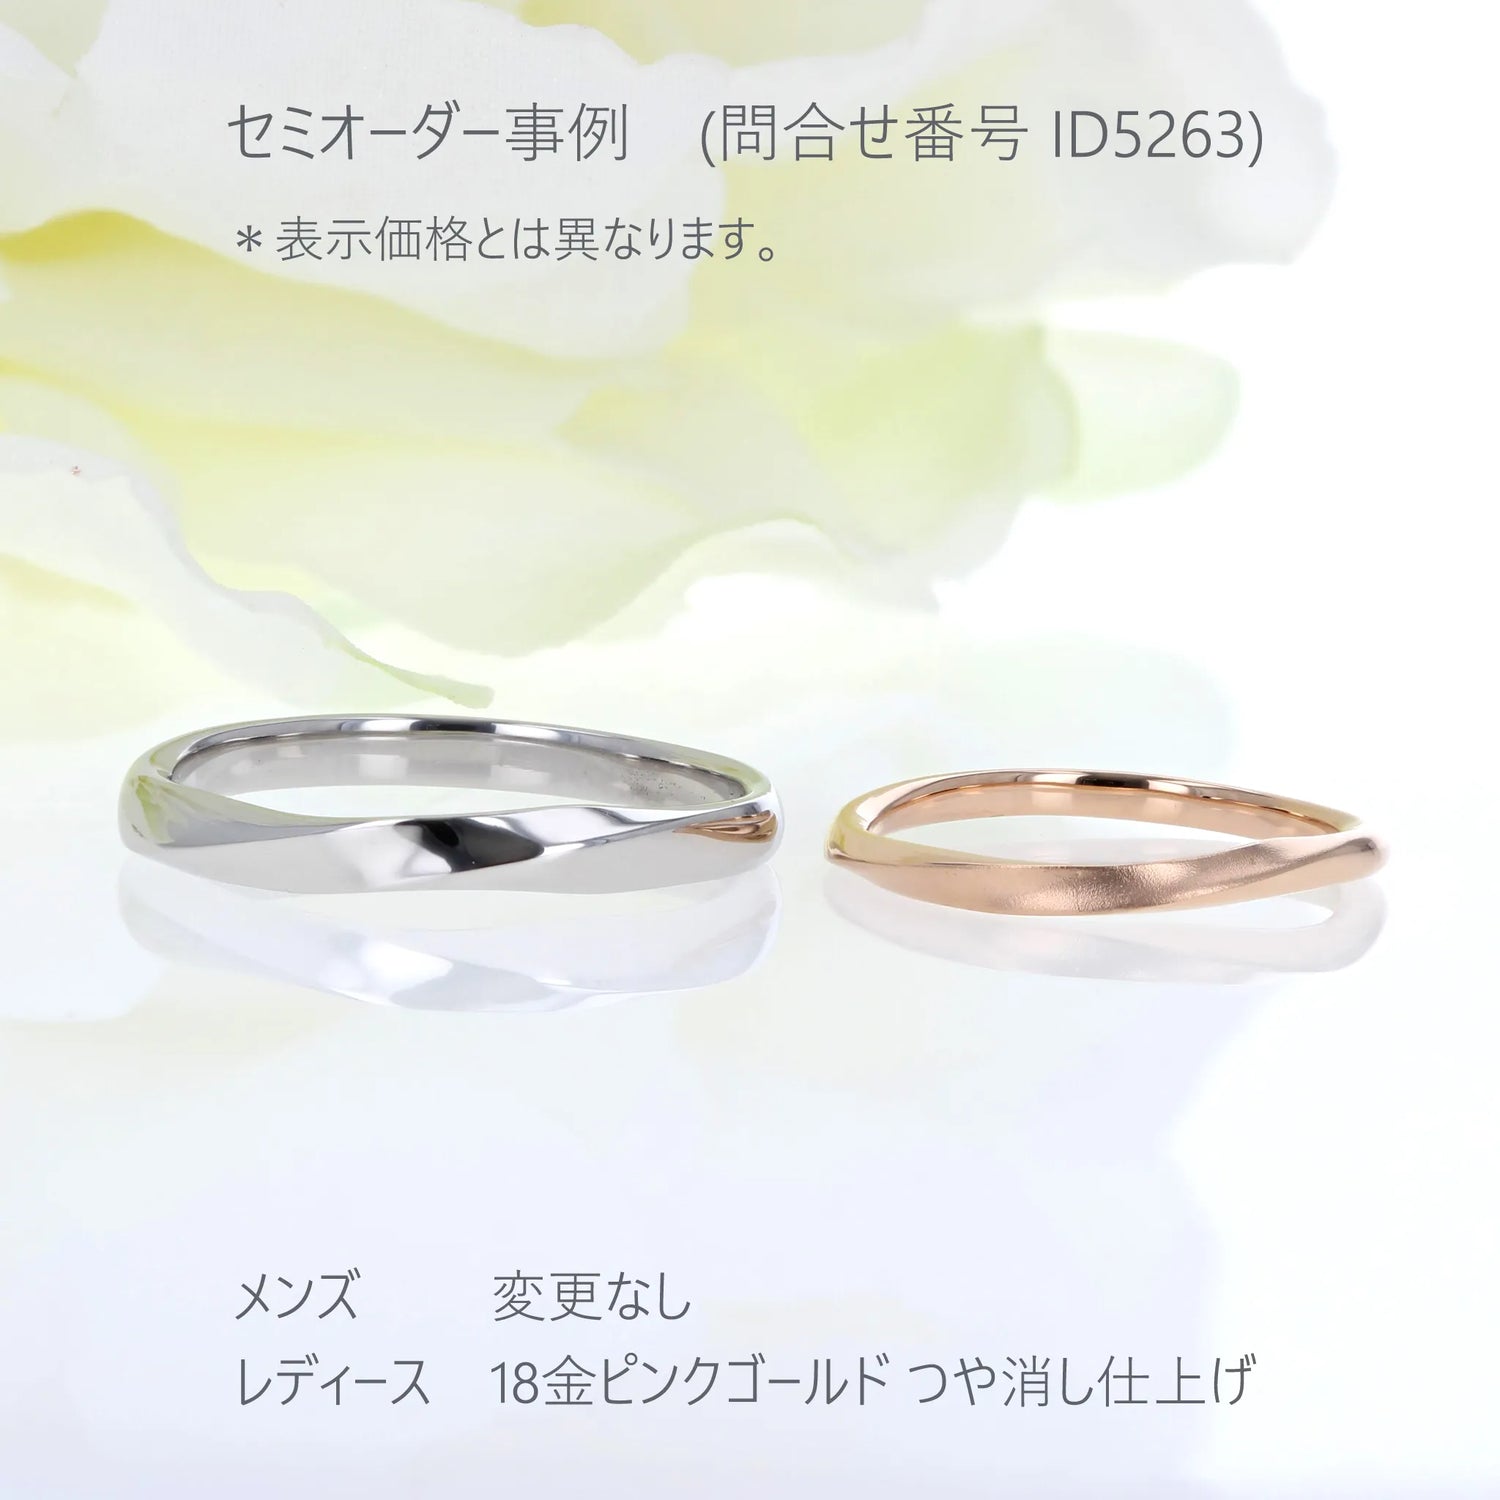  ひねりとエッジのきいたシンプルなデザインの結婚指輪 セミオーダー5263